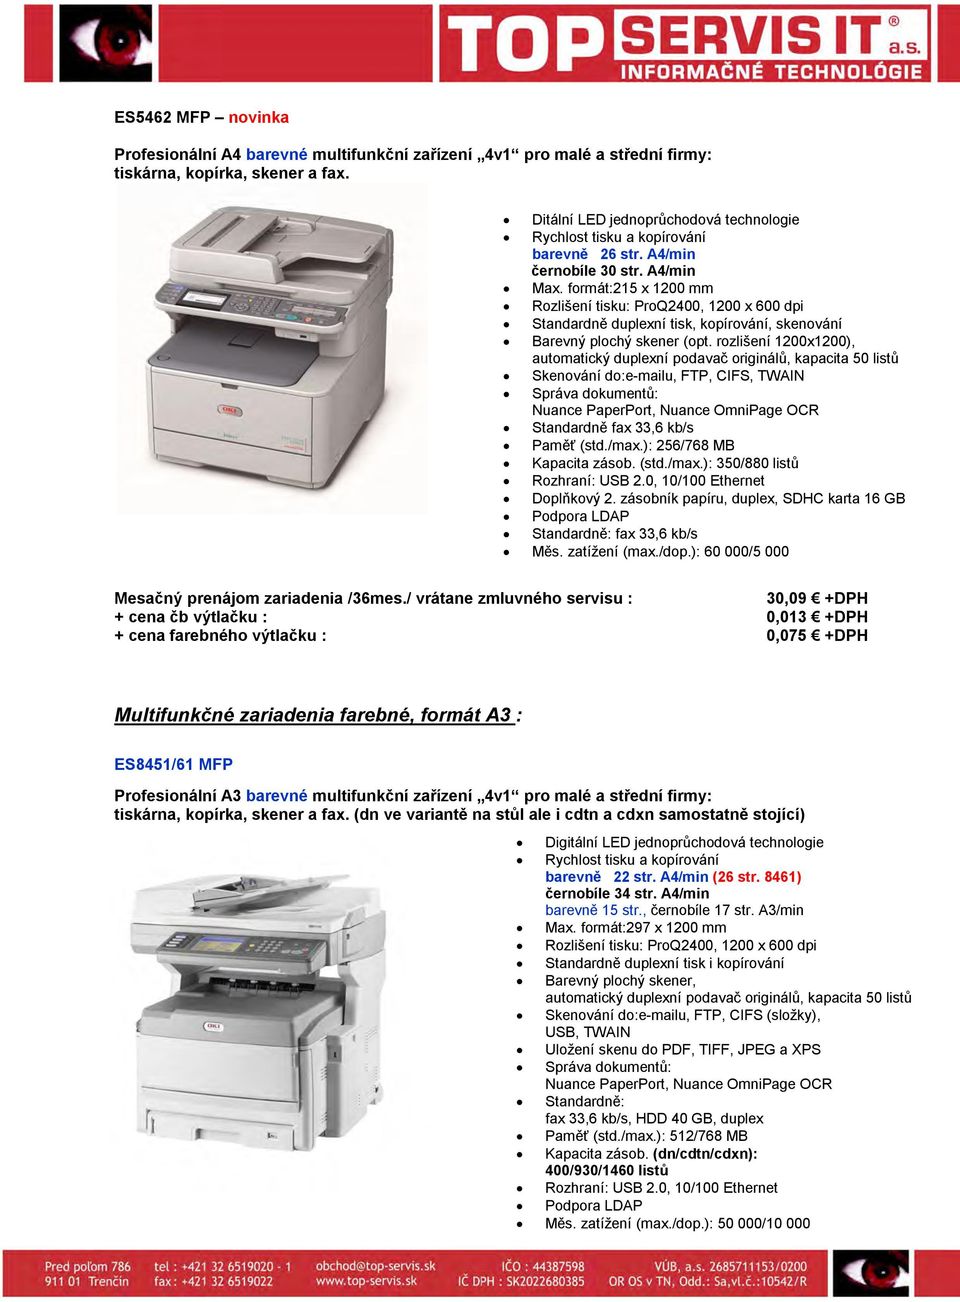 rozlišení 1200x1200), automatický duplexní podavač originálů, kapacita 50 listů Skenování do:e-mailu, FTP, CIFS, TWAIN Správa dokumentů: Nuance PaperPort, Nuance OmniPage OCR Standardně fax 33,6 kb/s